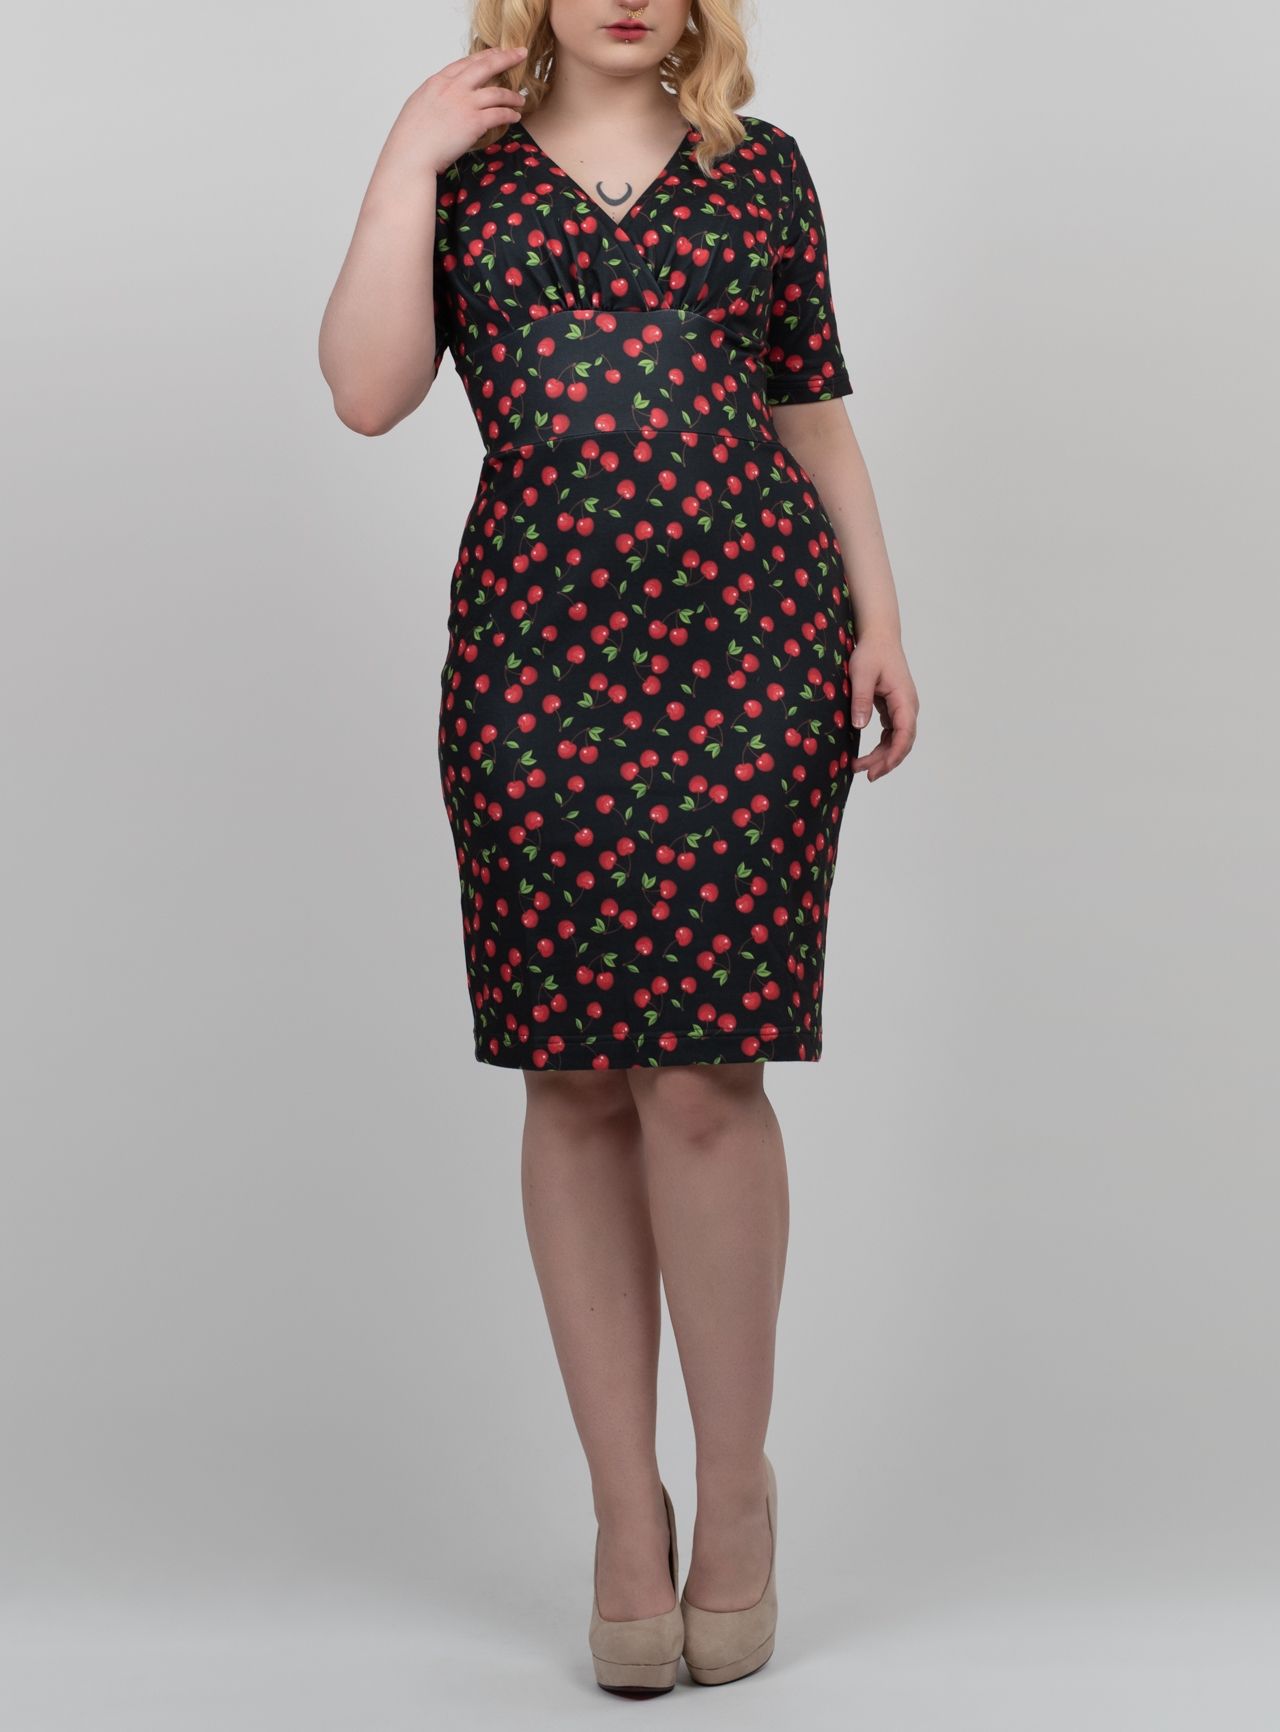 POLSKA Ołówkowa sukienka w wisienki cherry pin up